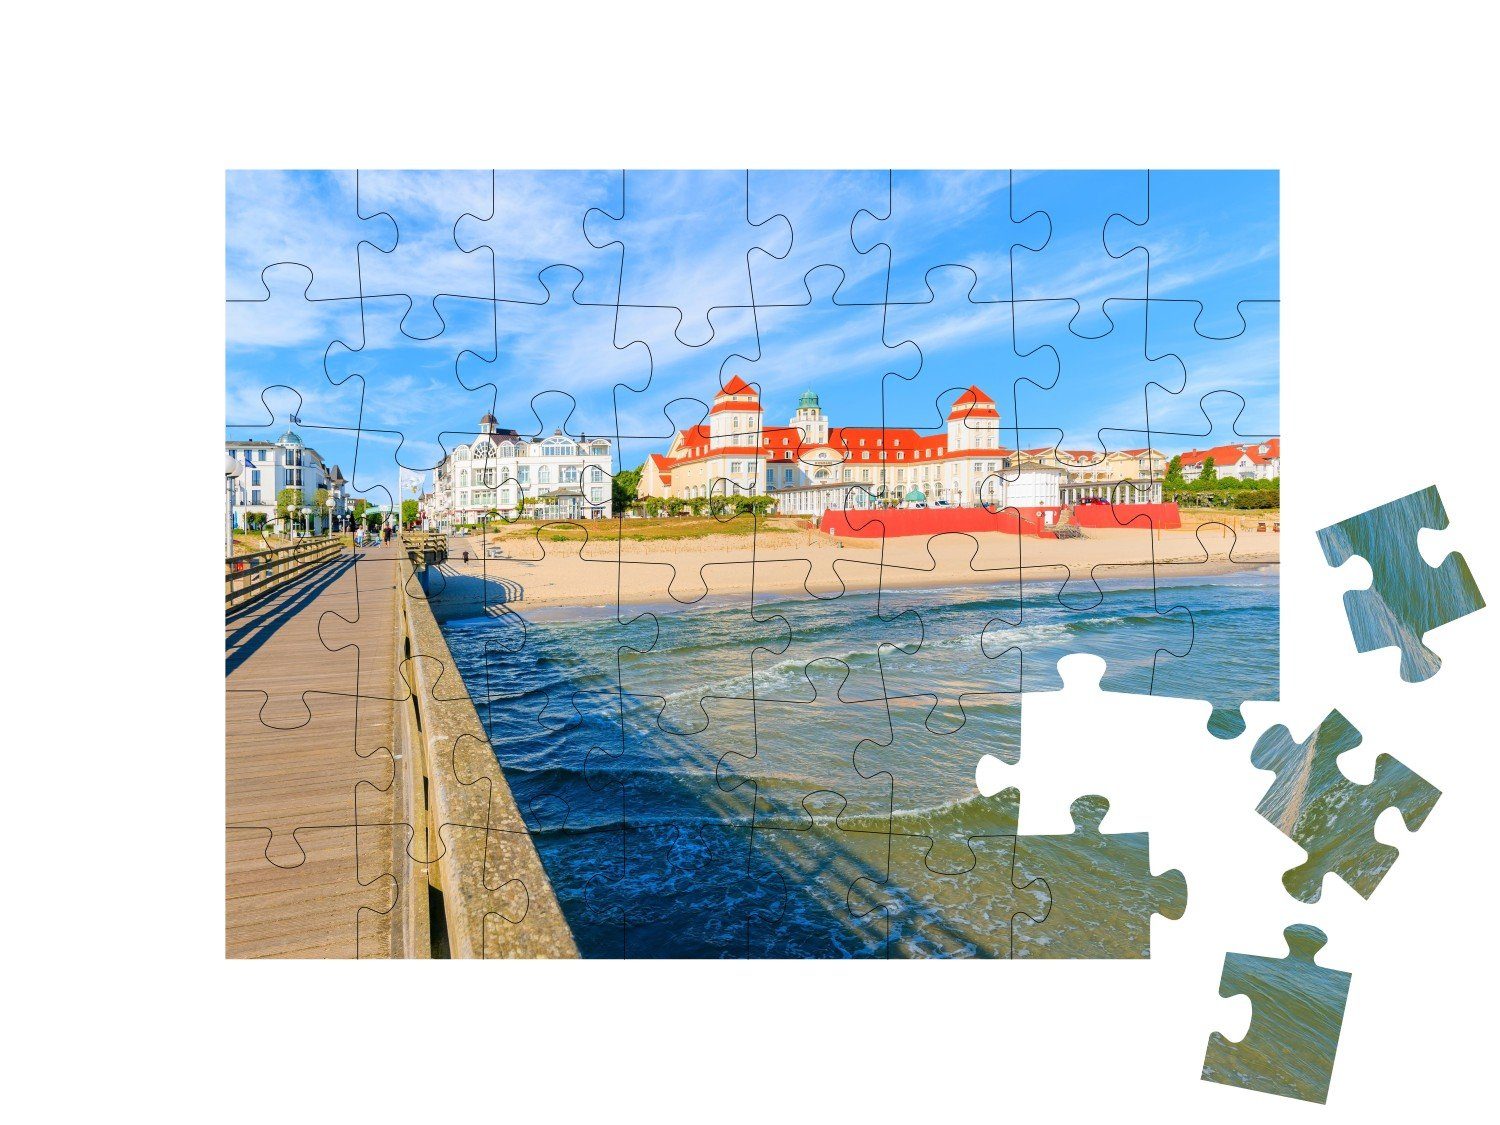 Seebrücke der Puzzleteile, puzzleYOU 48 Binz, Rügen, Puzzle in Insel Blick puzzleYOU-Kollektionen von